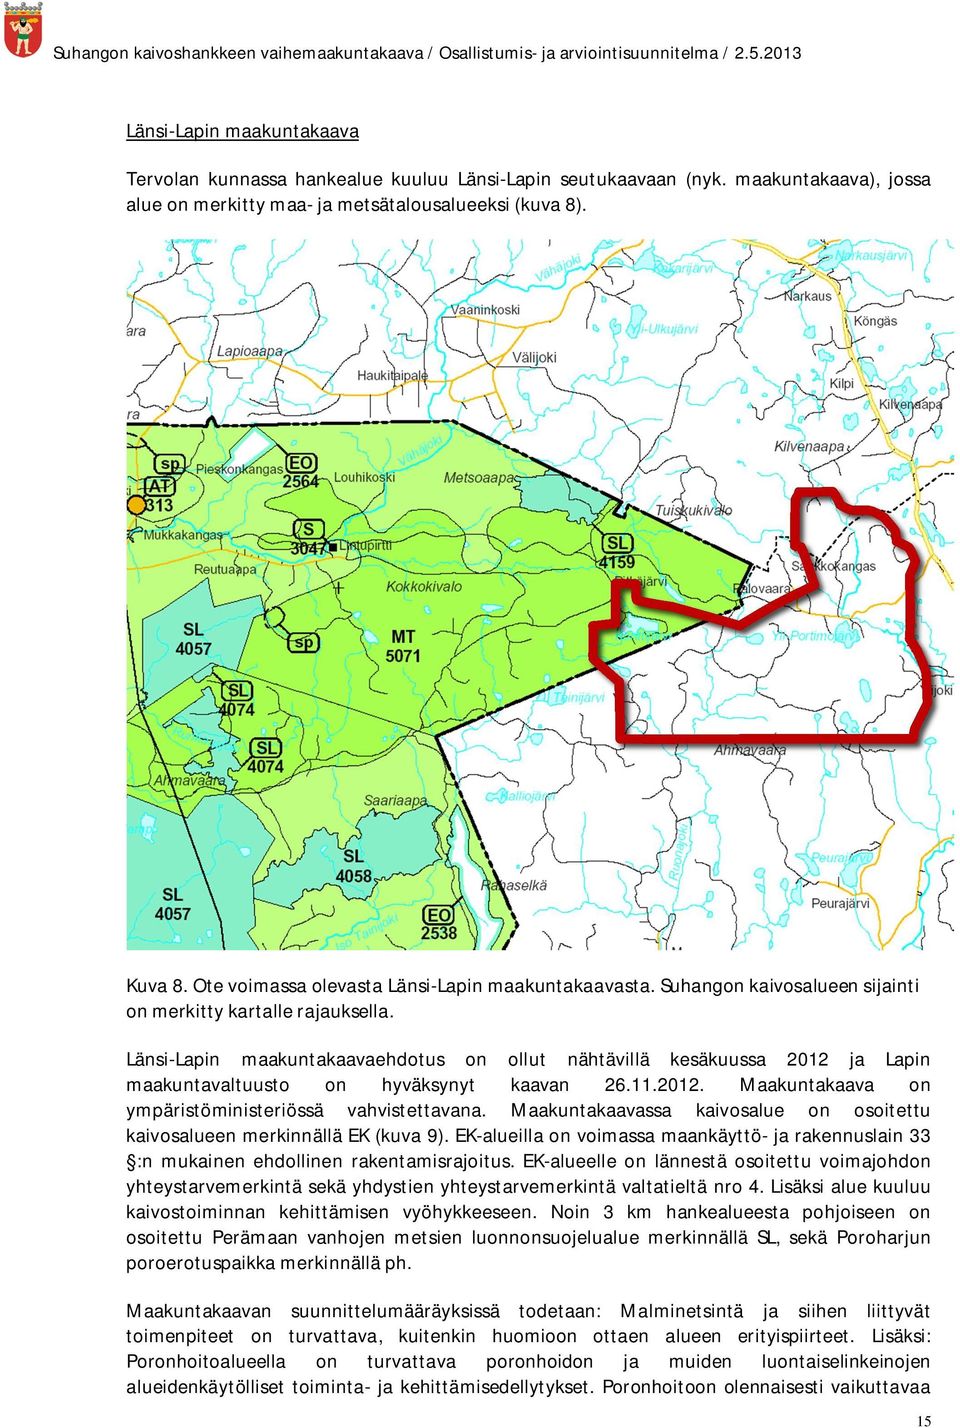 Länsi-Lapin maakuntakaavaehdotus on ollut nähtävillä kesäkuussa 2012 ja Lapin maakuntavaltuusto on hyväksynyt kaavan 26.11.2012. Maakuntakaava on ympäristöministeriössä vahvistettavana.